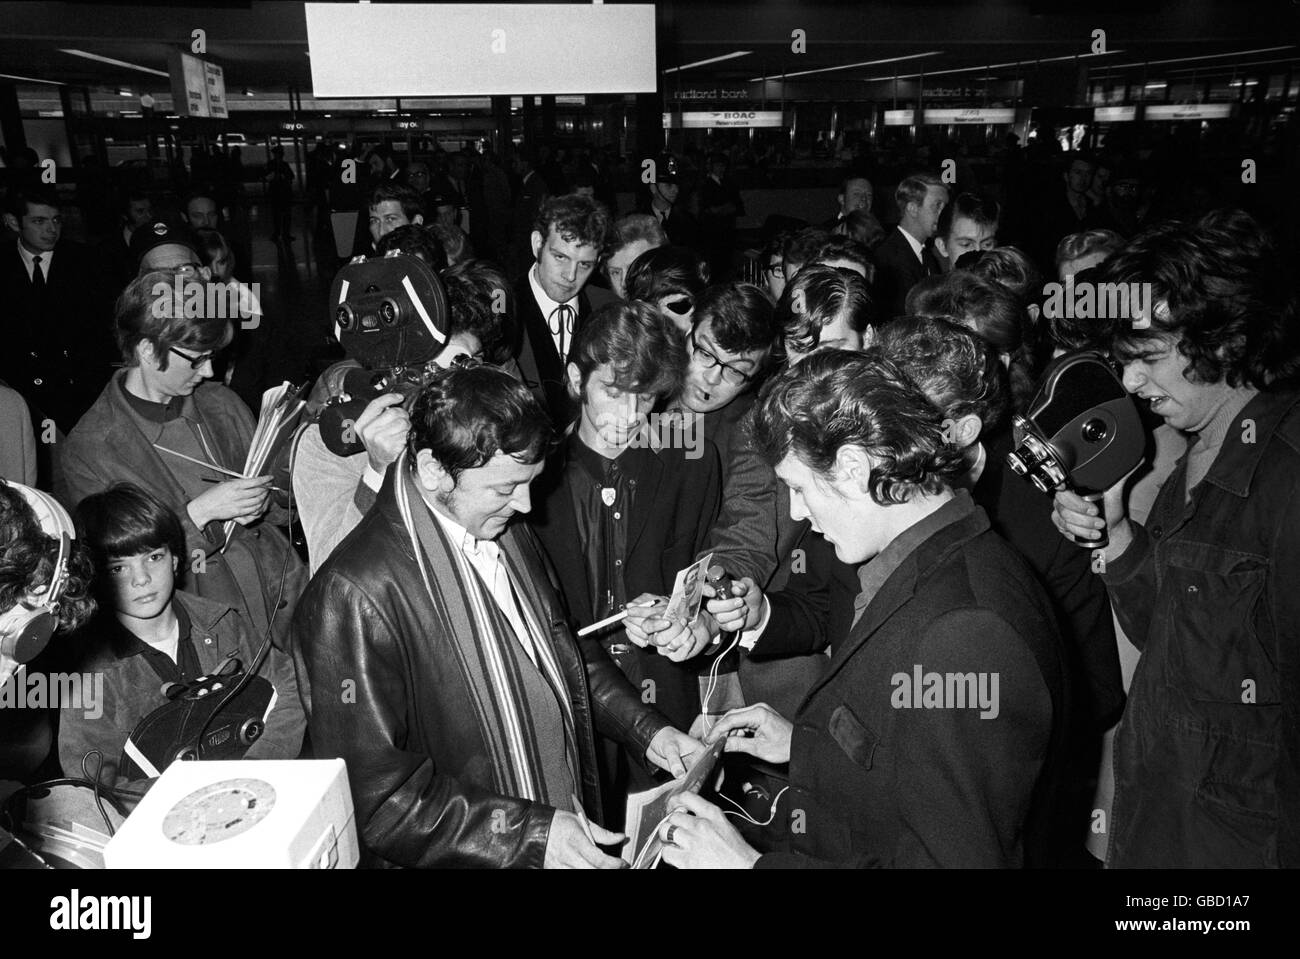 Música - Gene Vincent - Aeropuerto de Heathrow - Londres - 1969. El cantante de rock and roll Gene Vincent para su autógrafo a su llegada al aeropuerto de Heathrow desde París. Foto de stock